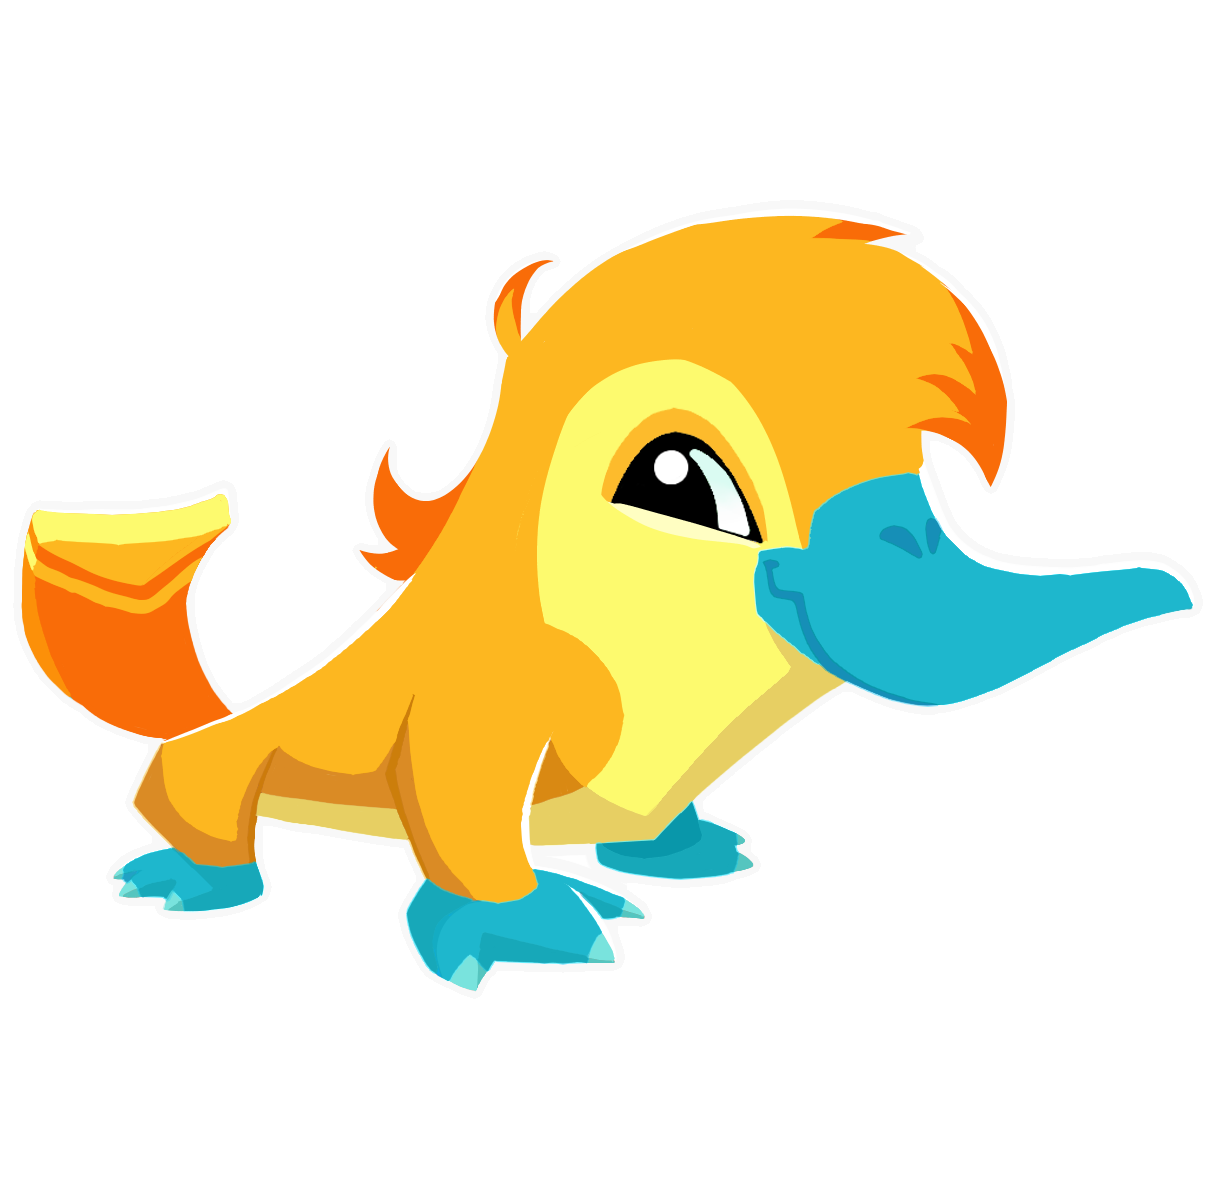 my fursona, Ducky, as an Animal Jam avatar.